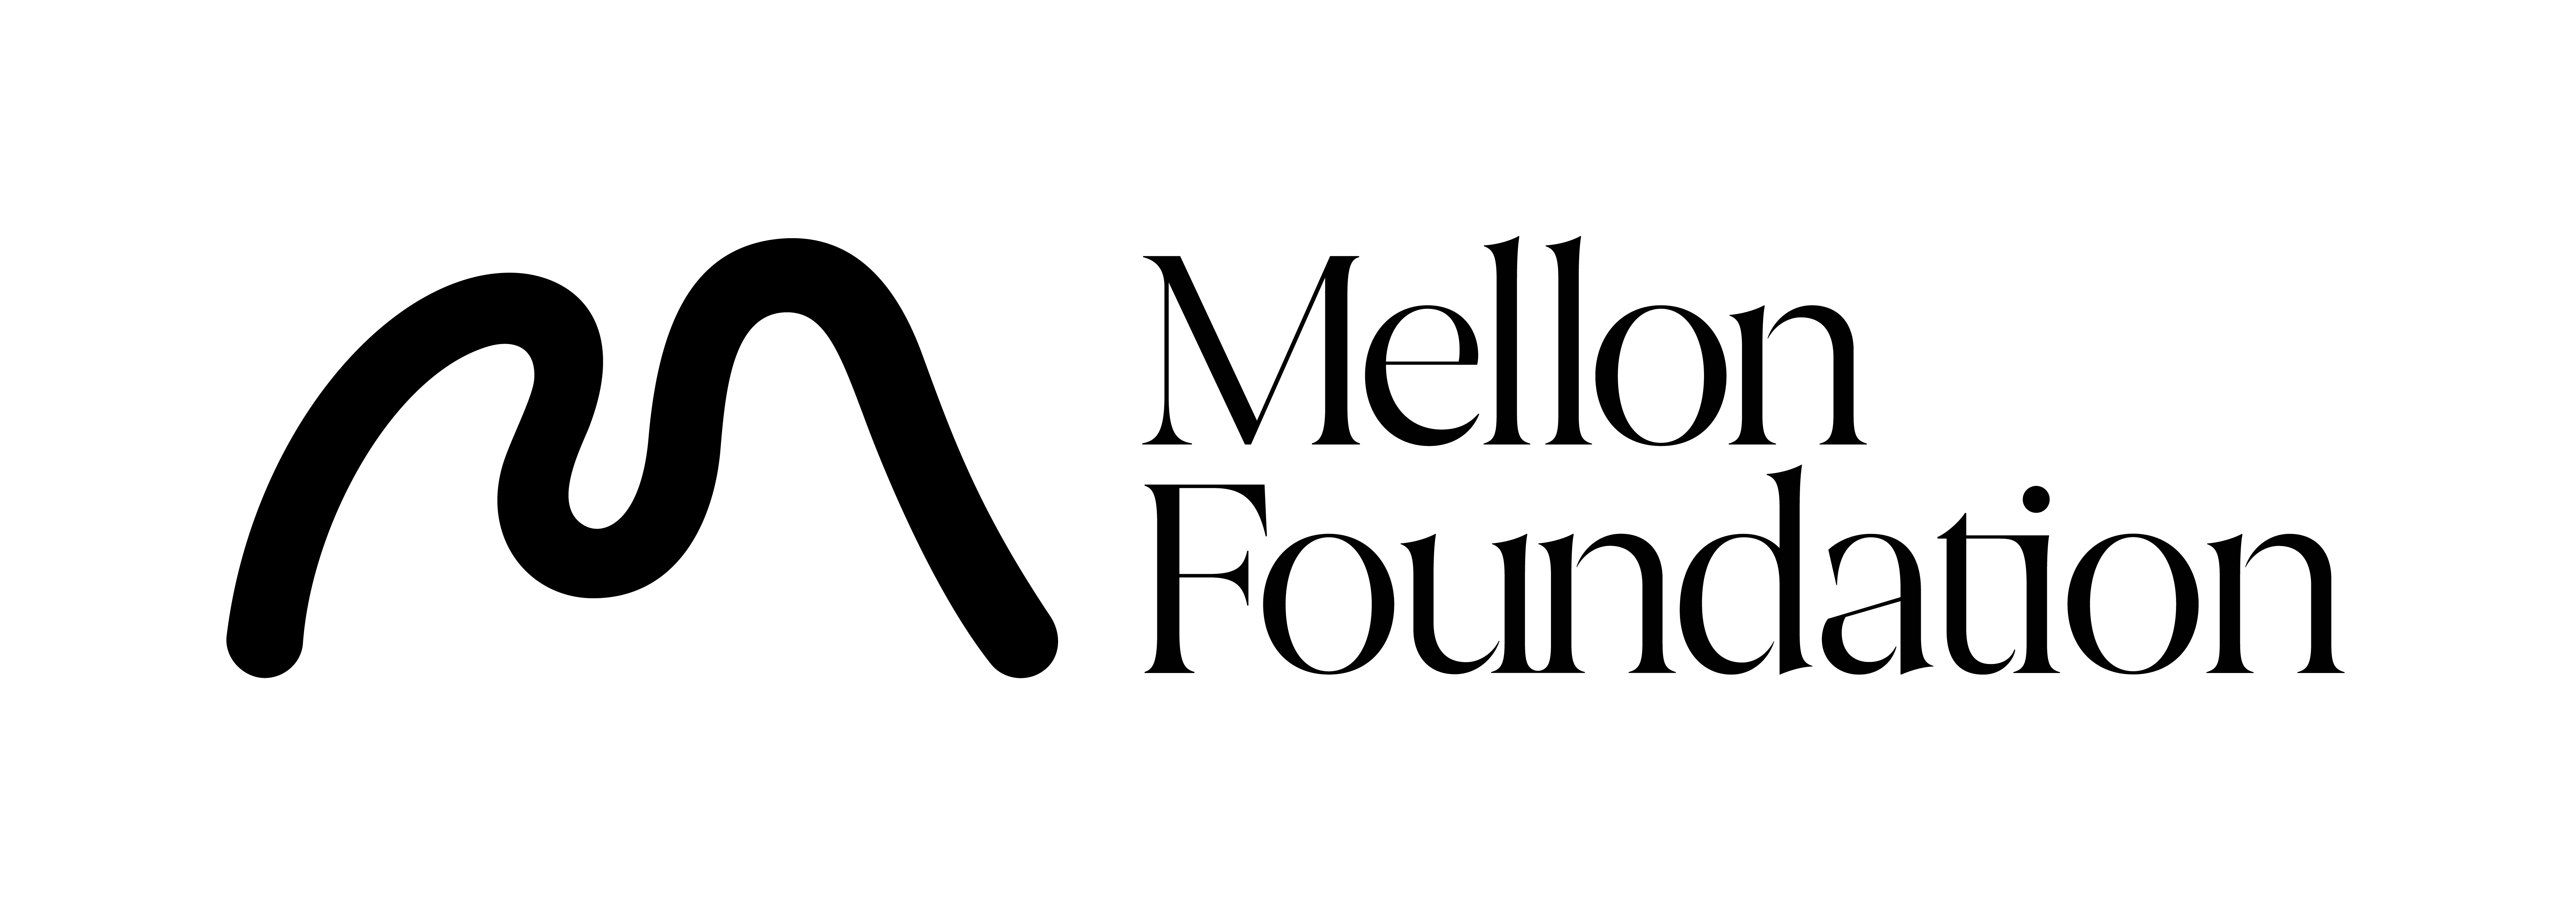 Mellon Foundation logo mark.